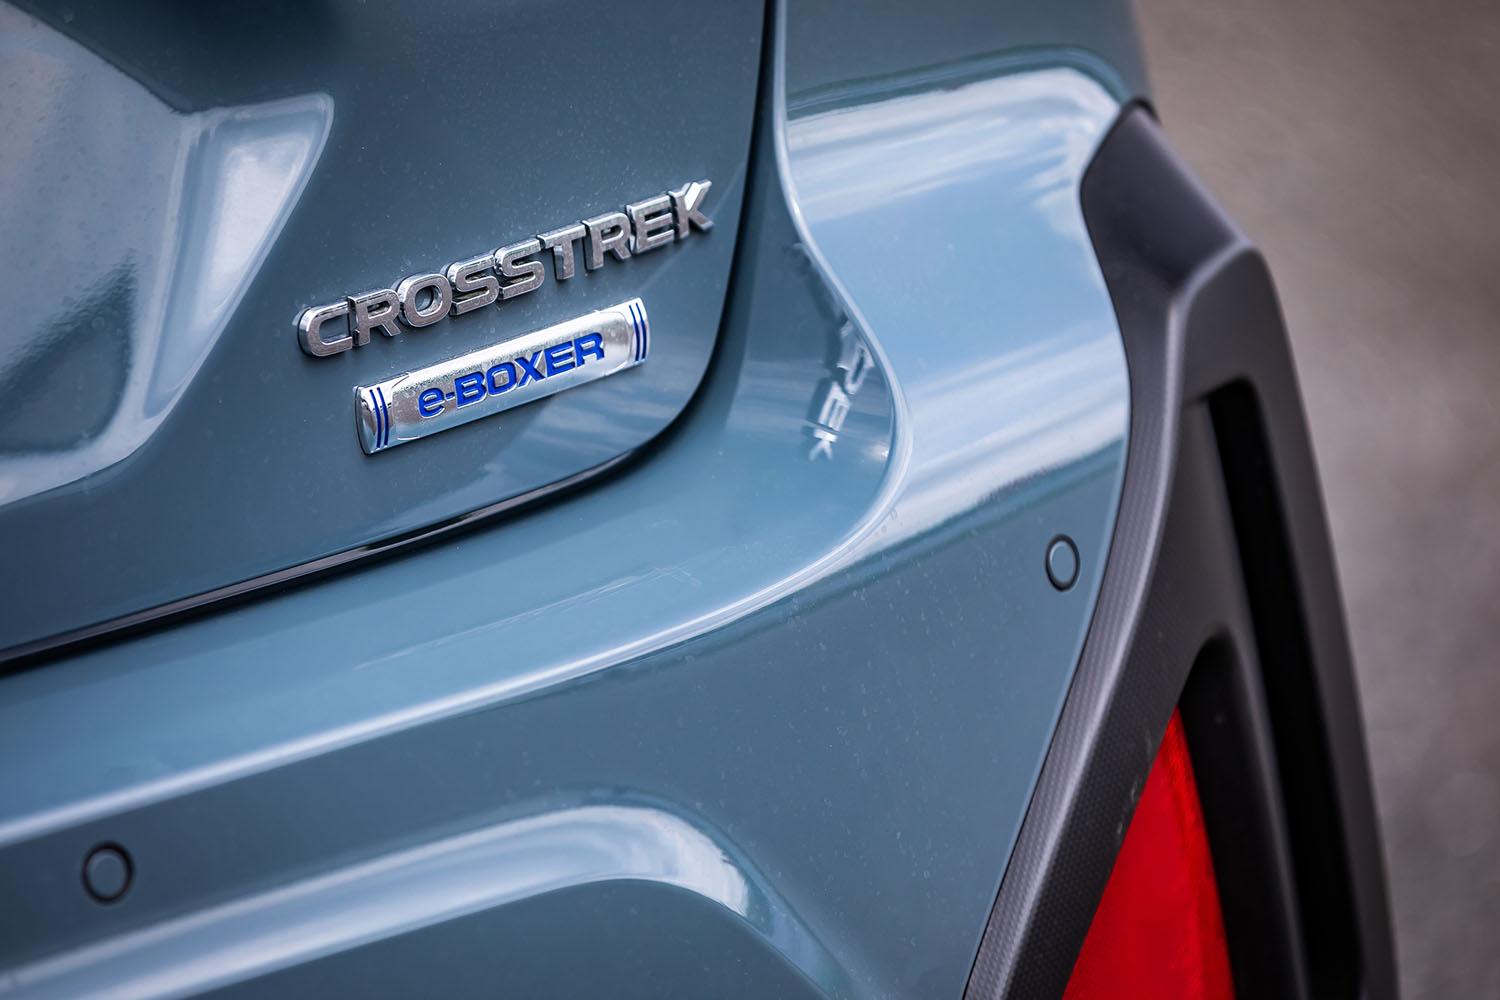 新型「クロストレック」の元祖は、2010年に国内で発売された3代目「インプレッサ」の派生モデル「インプレッサXV」。2012年に4代目インプレッサをベースとした2代目が登場し、「XV」として独立。今回フルモデルチェンジにあたり、グローバルで名称がクロストレックに統一された。